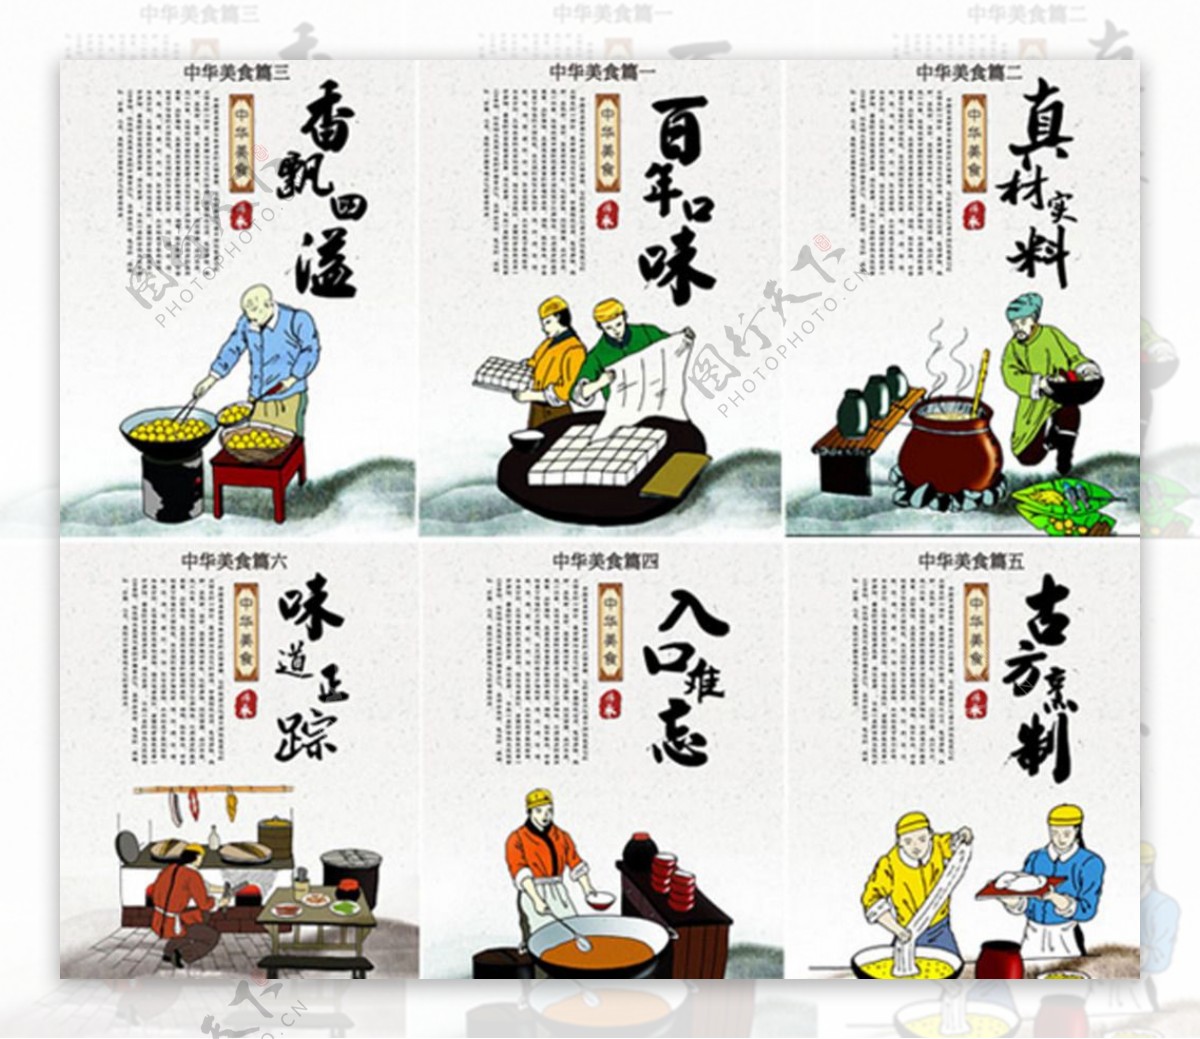 传统中华美食海报